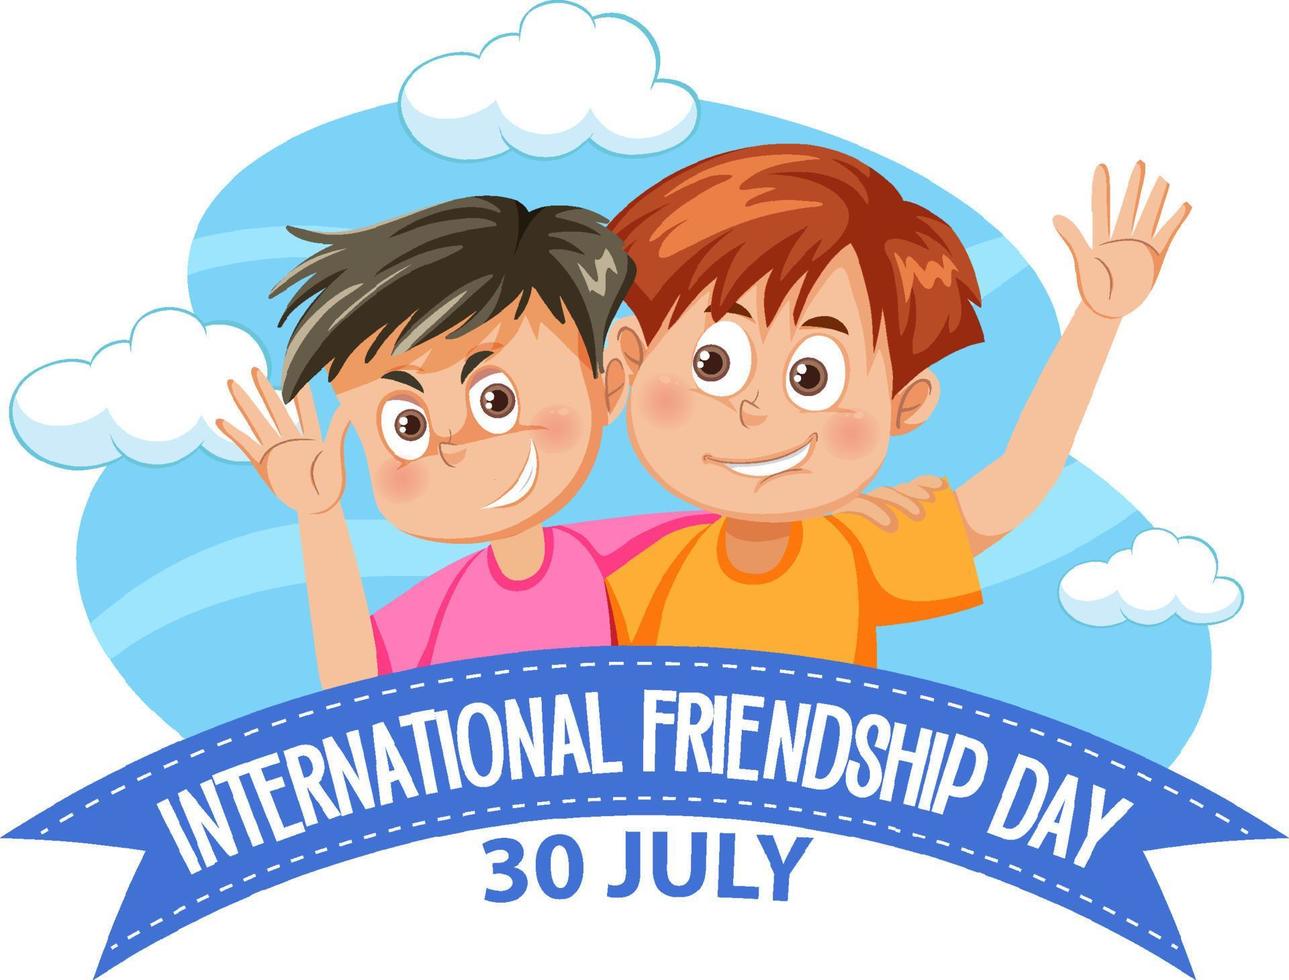 design de banner do dia internacional da amizade vetor